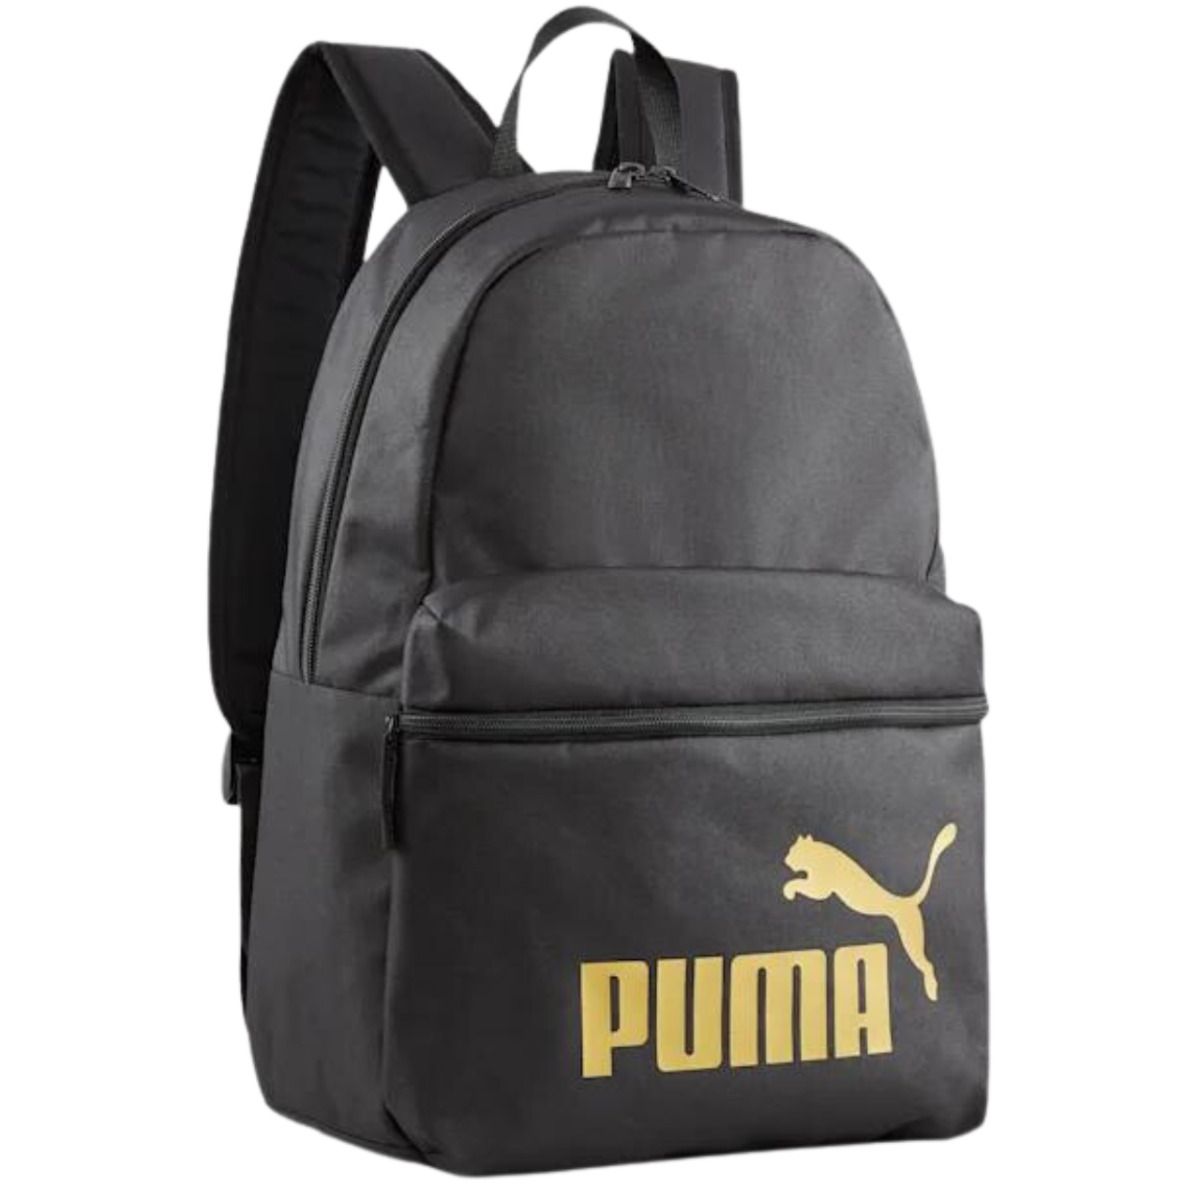 PUMA Plecak Phase 79943 03